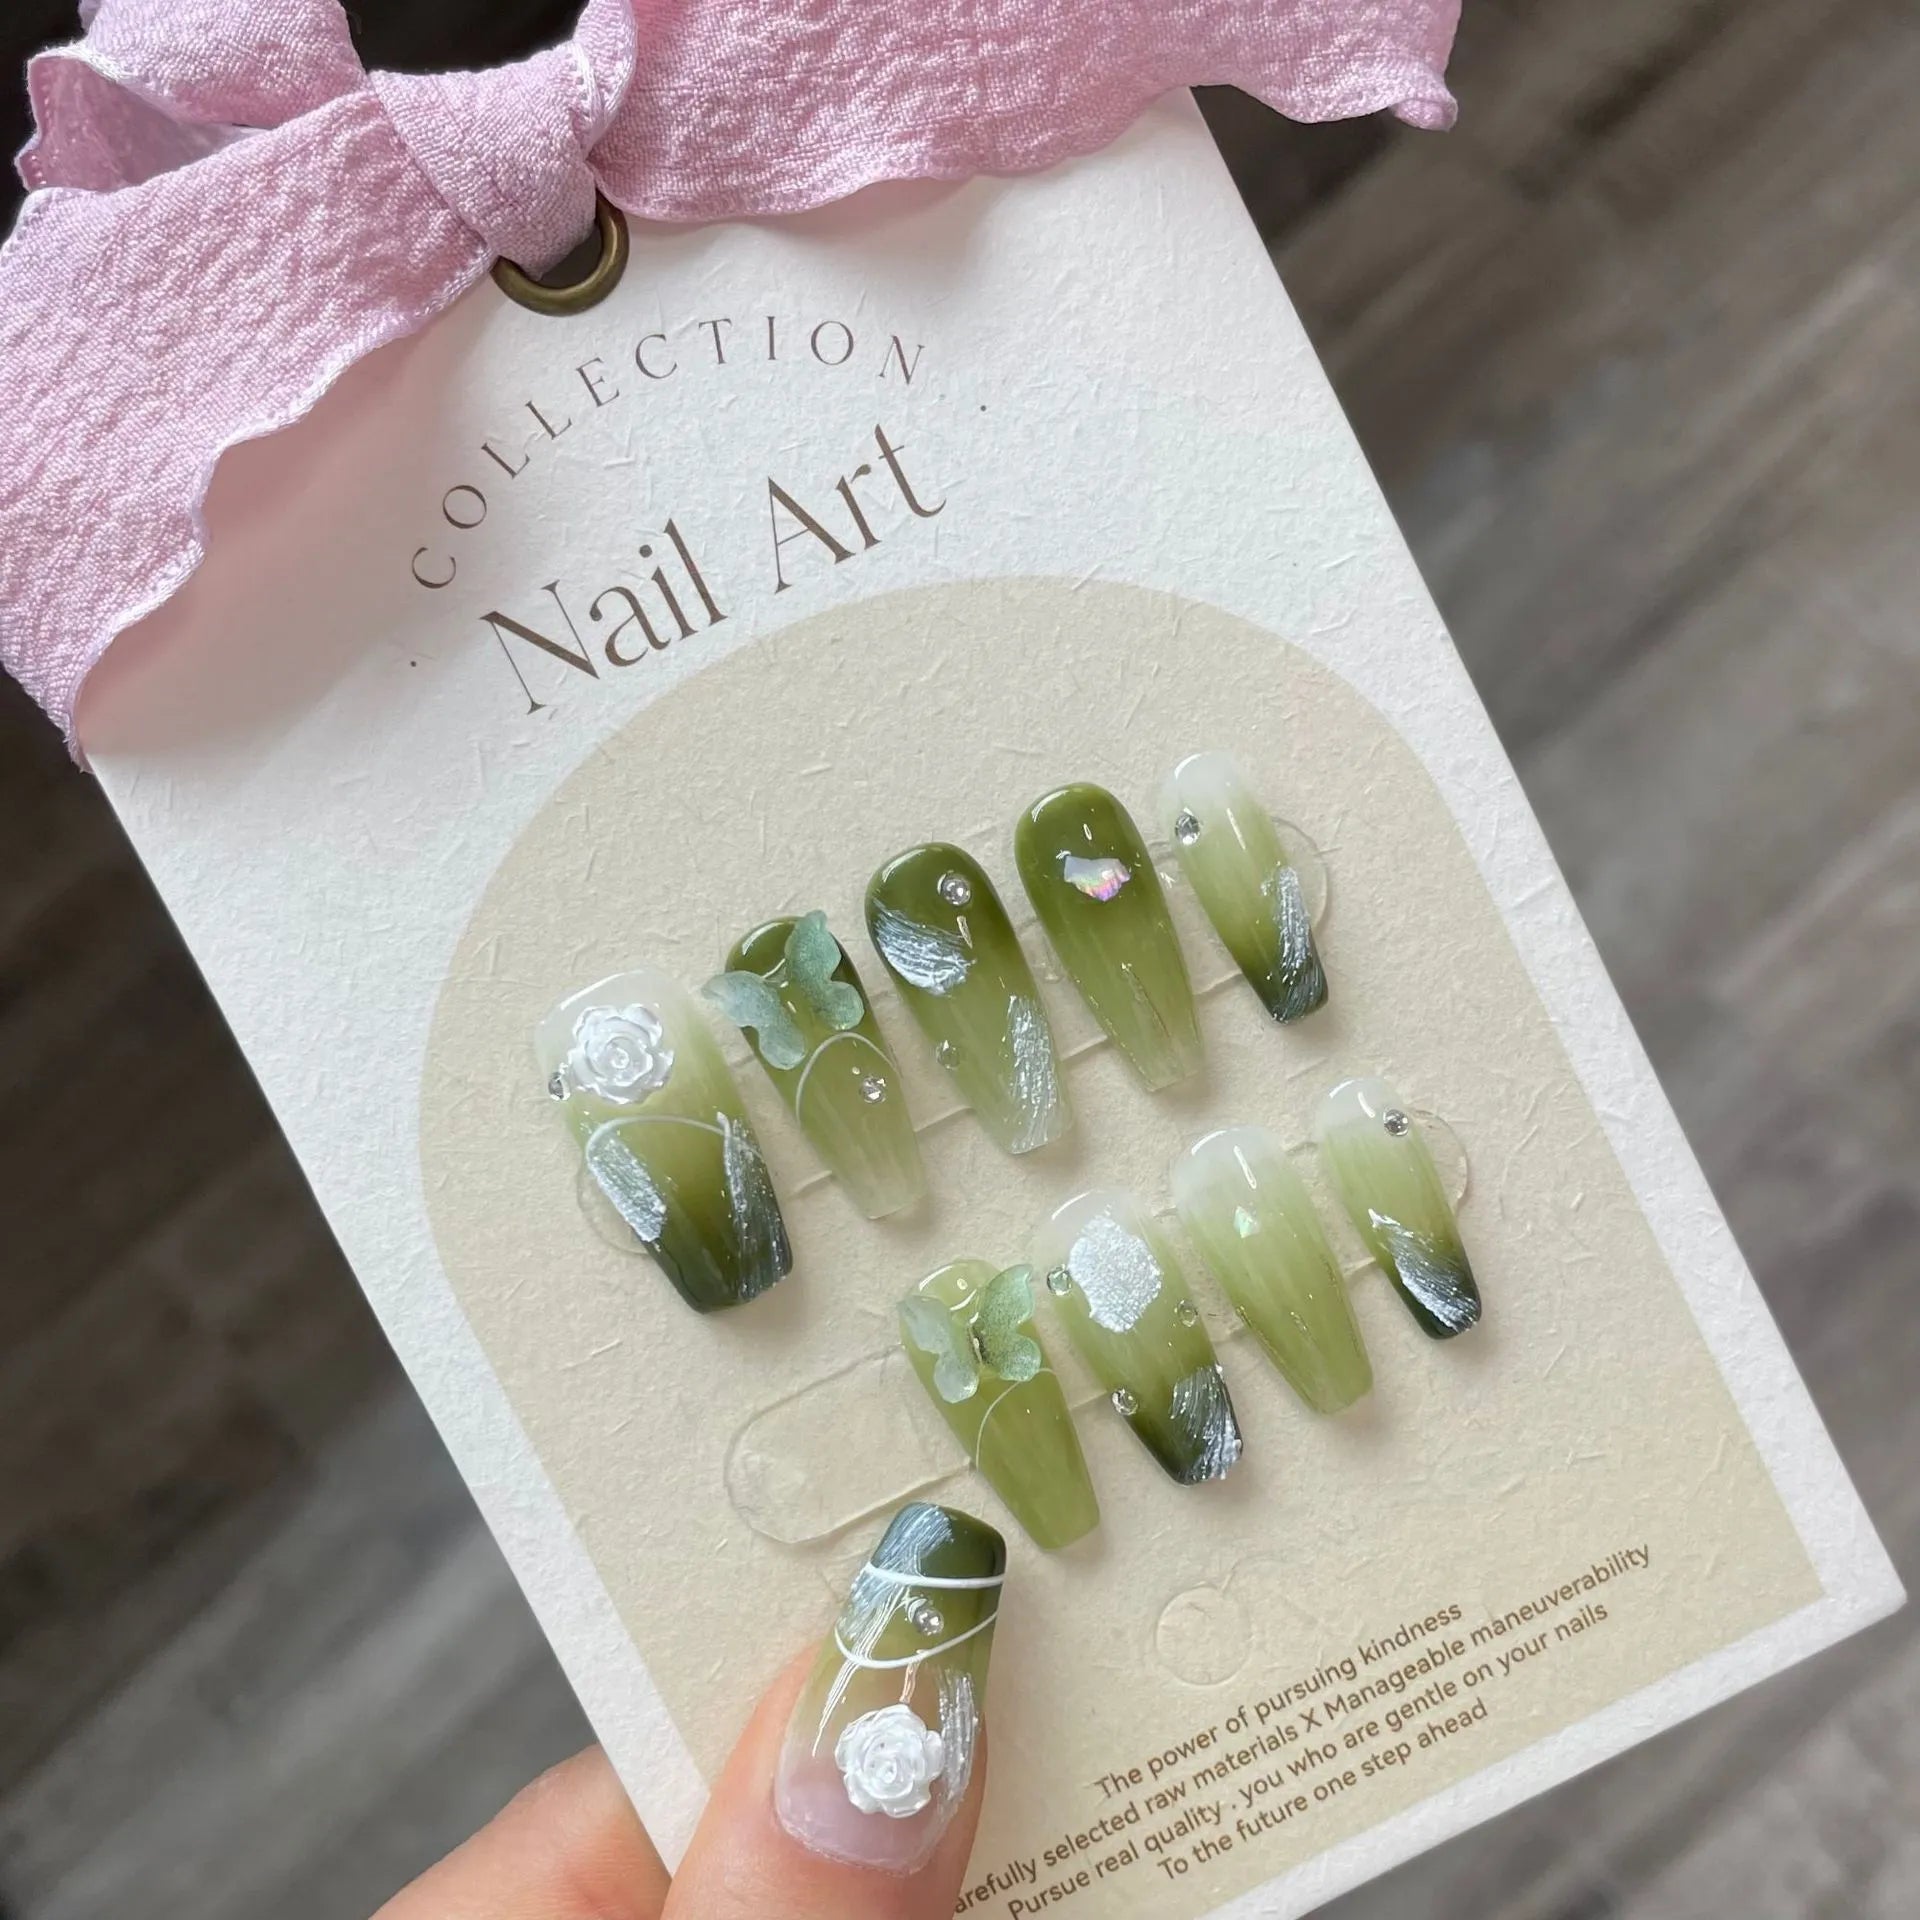 Uñas falsas verdes hechas a mano acrílico ataúd uñas con flores diseños 3D encantos artificiales envío gratis prensa en uñas arte